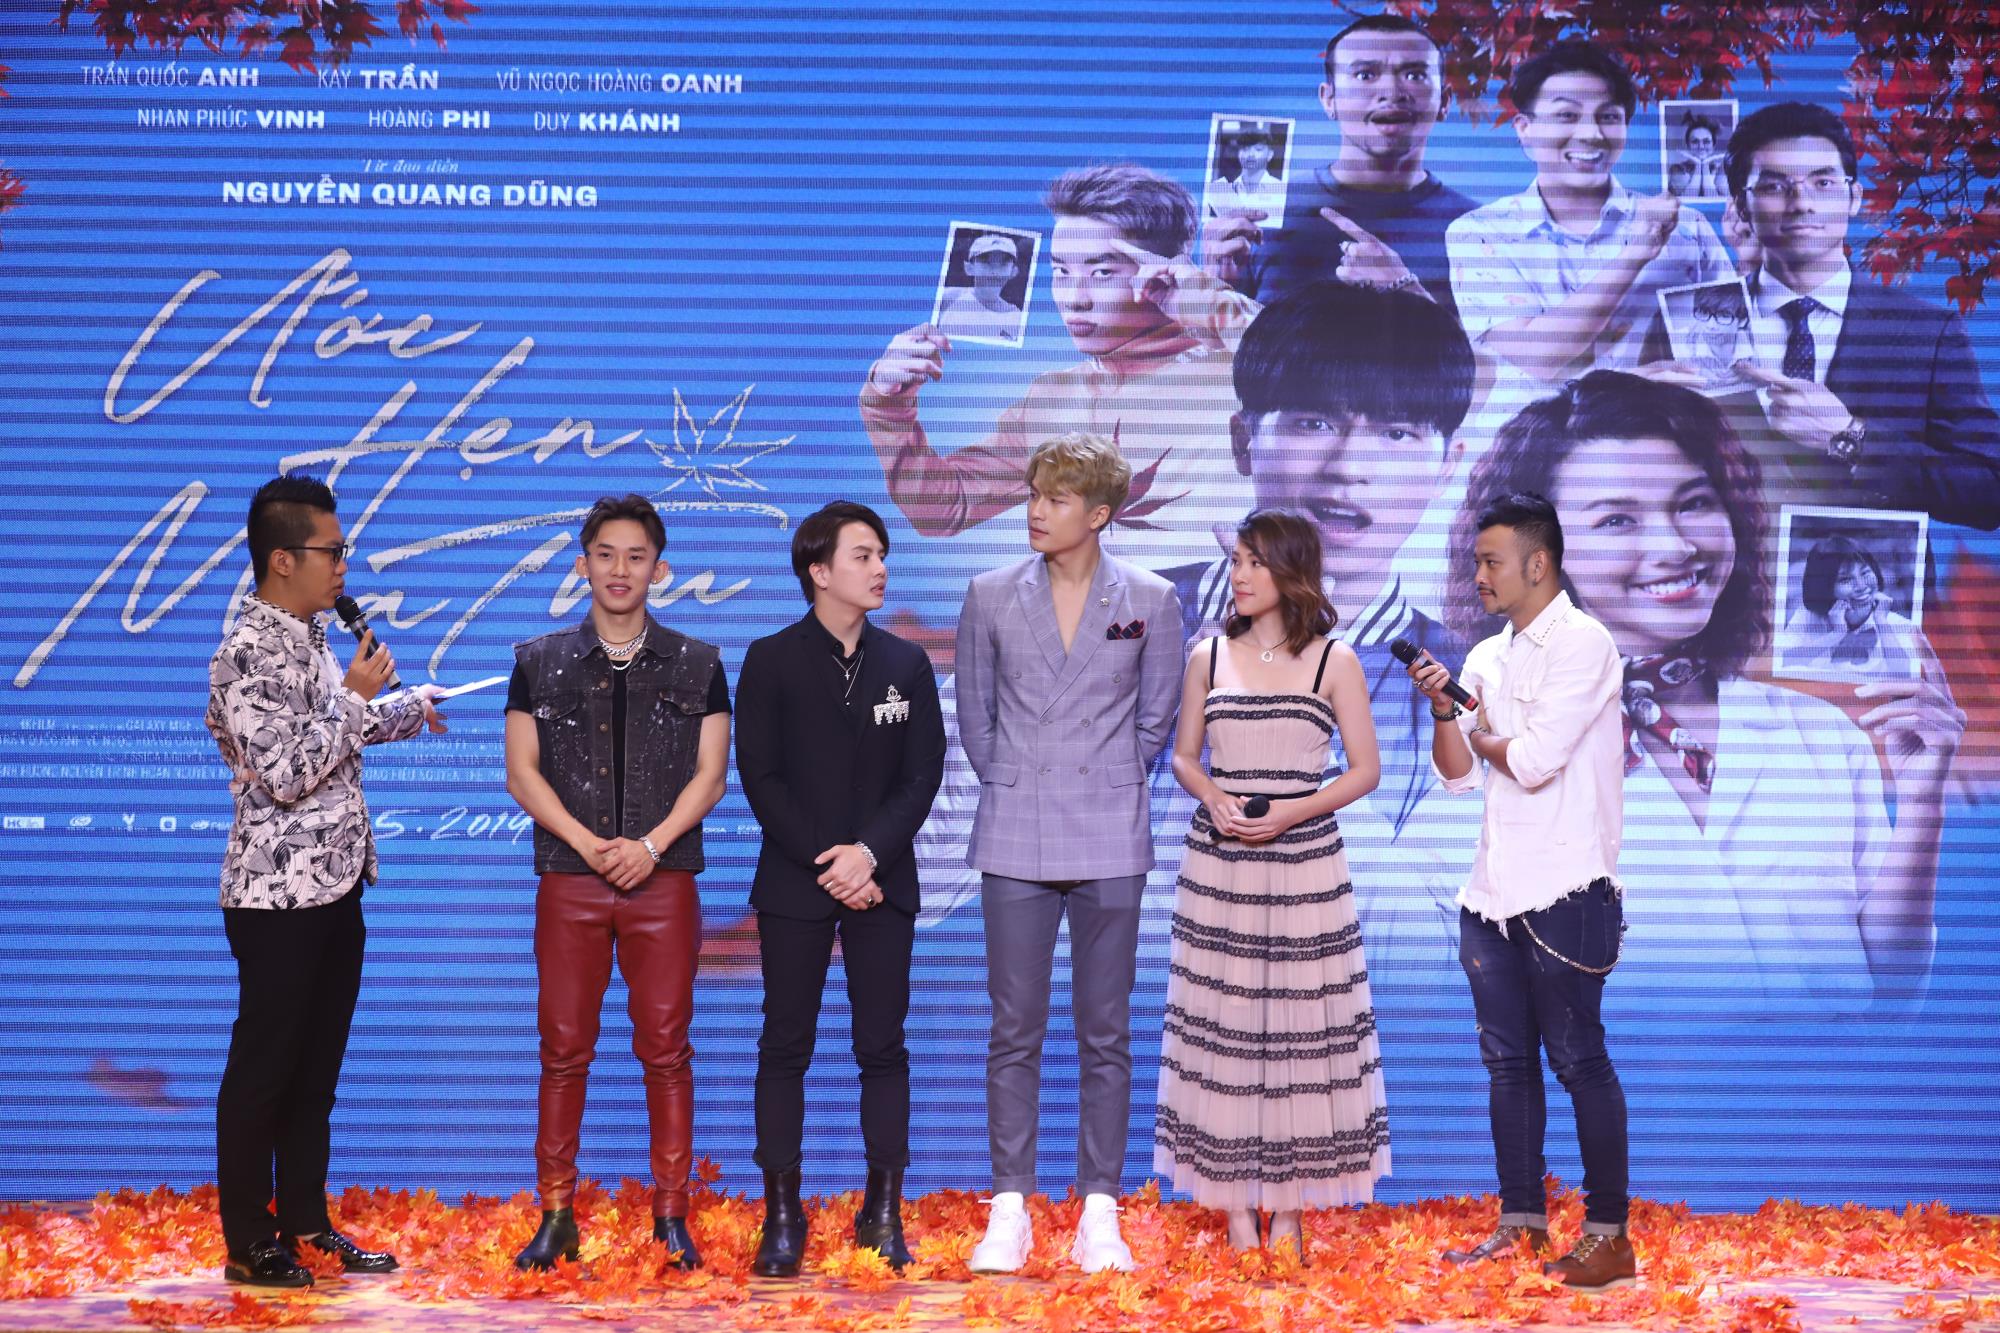 Duy Khánh đóng phim 3 tháng xuất hiện trong 3s trailer, Kay Trần giải thích nickname LONG 2K18CM - Ảnh 2